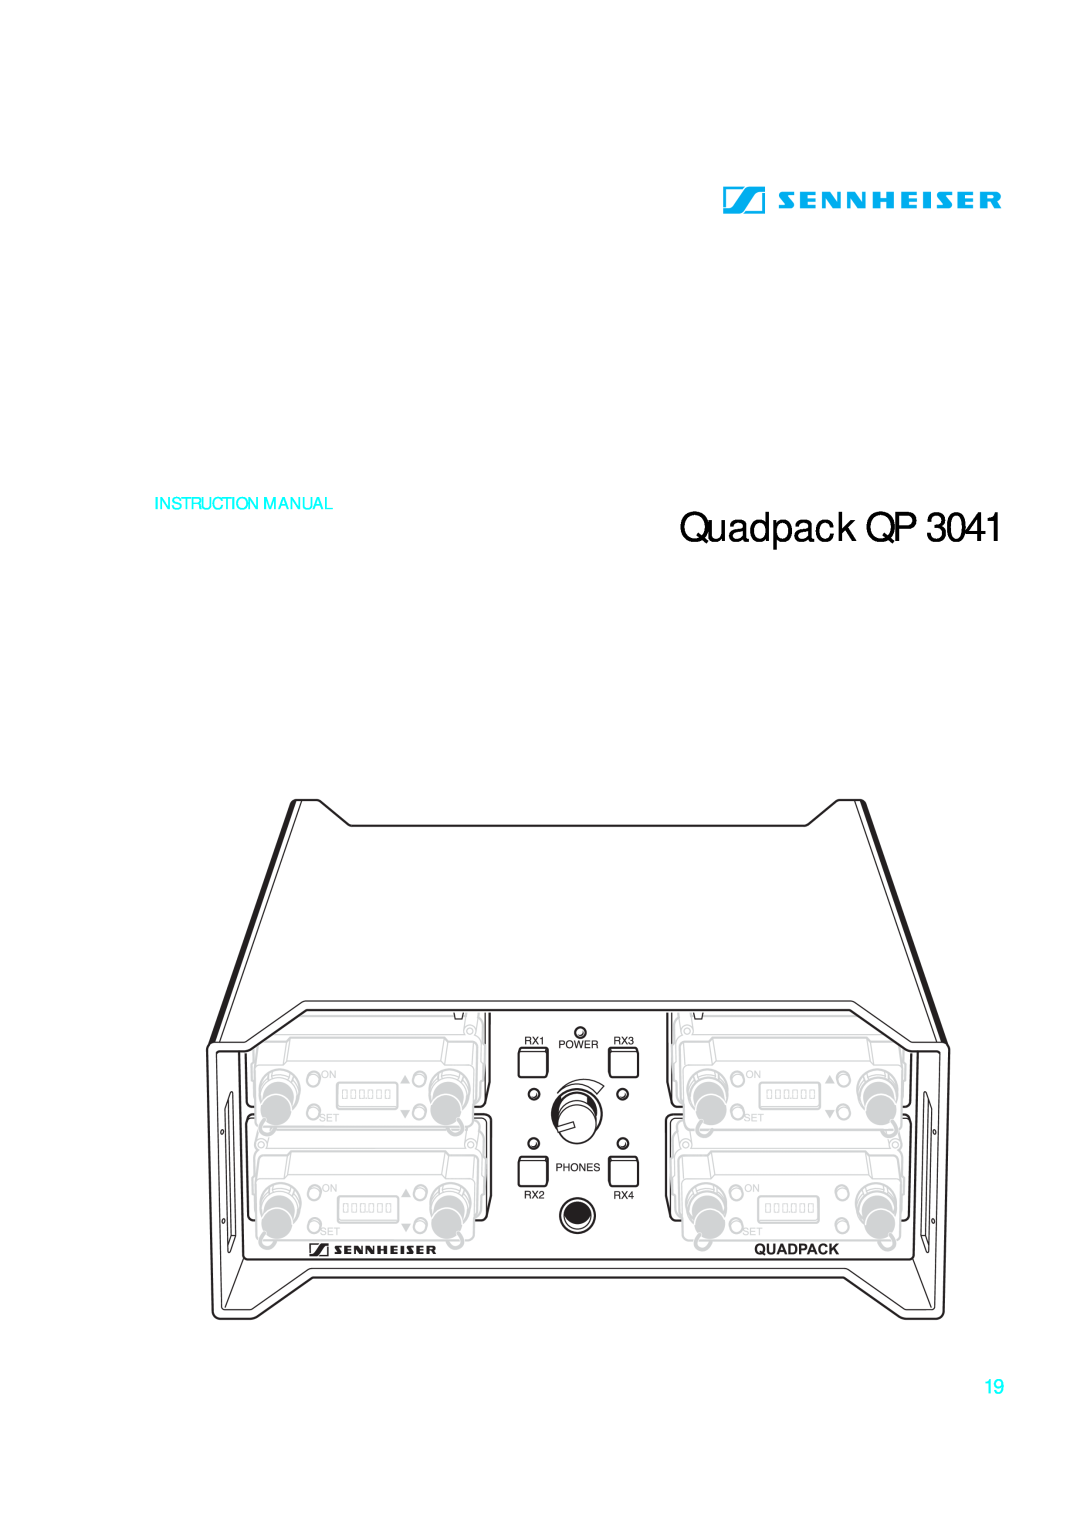 Sennheiser qp 3041 instruction manual Quadpack QP 